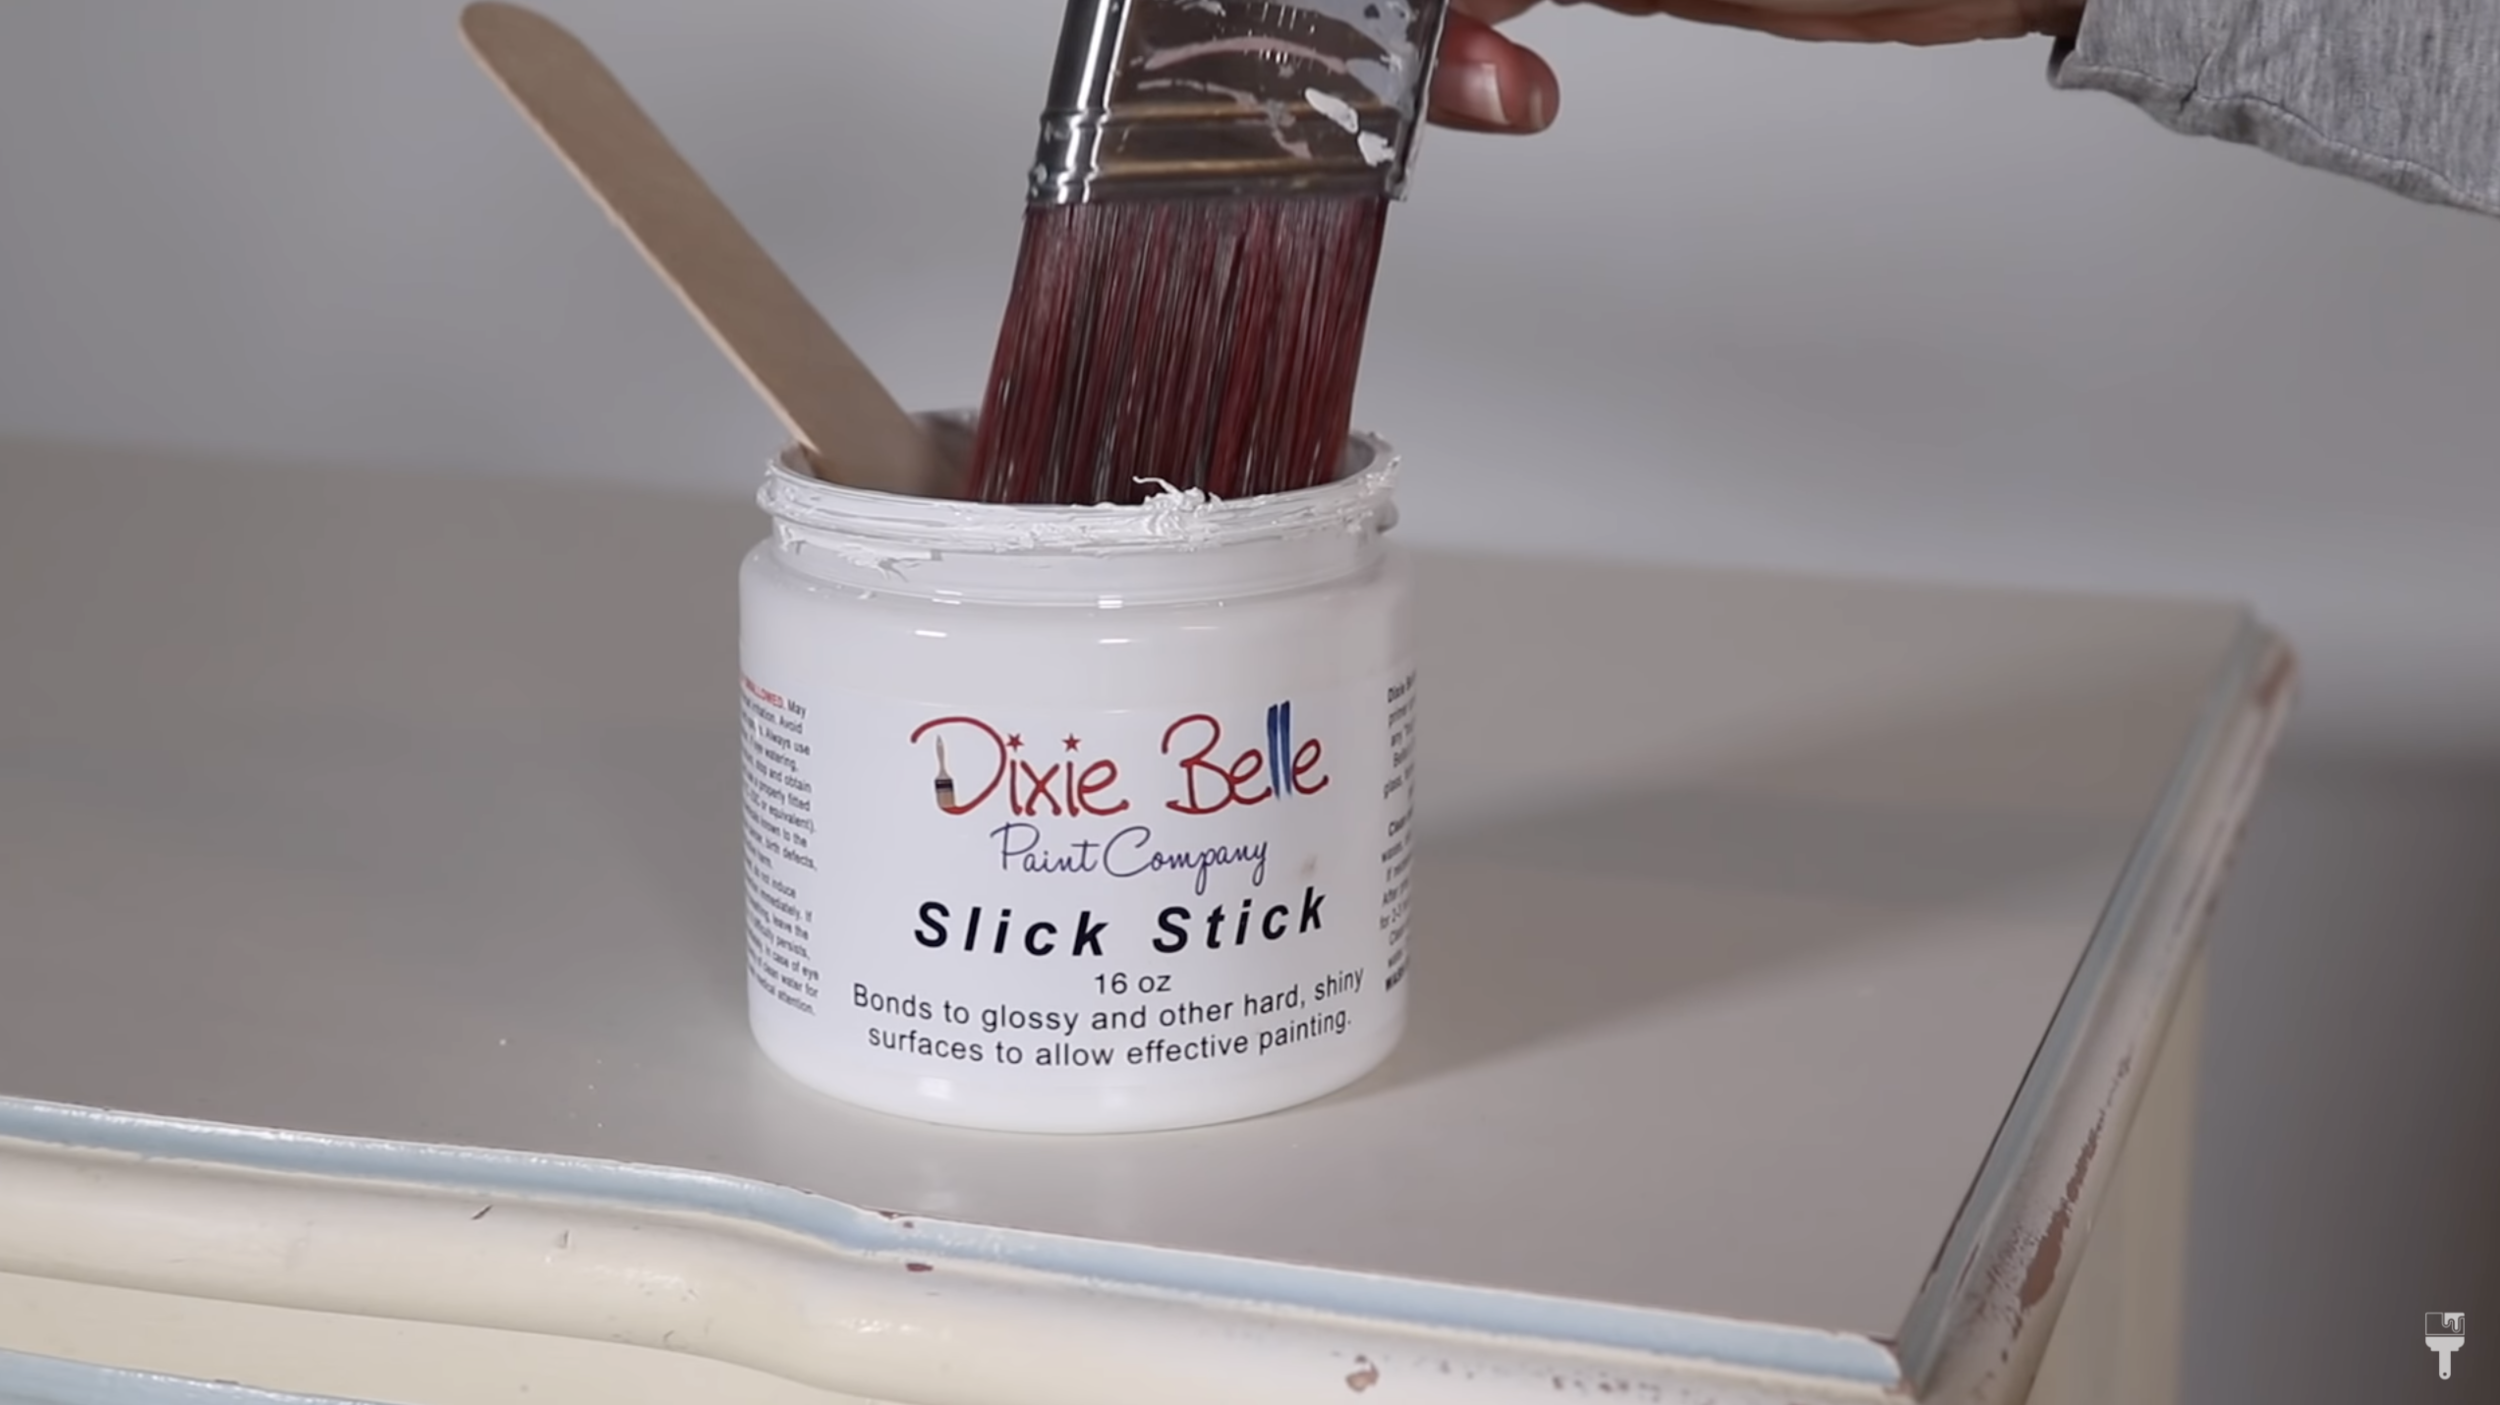 Dixie Belle Slick Stick Primer